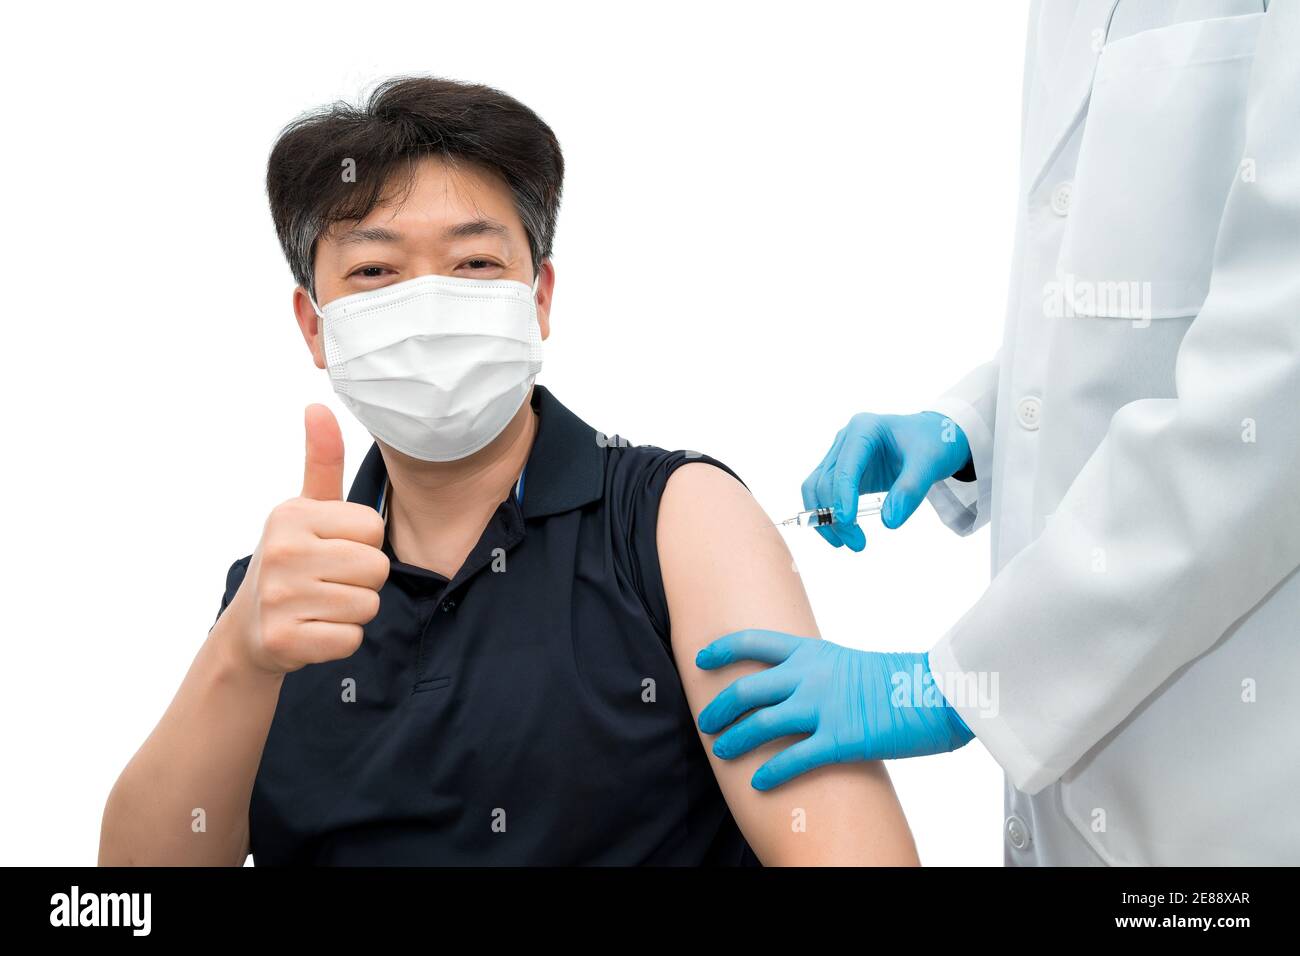 Ein behandelter Arzt, der eine Spritze hält, gibt einem asiatischen männlichen Patienten mittleren Alters, der eine medizinische Maske trägt, eine Impfstoffinjektion. Stockfoto